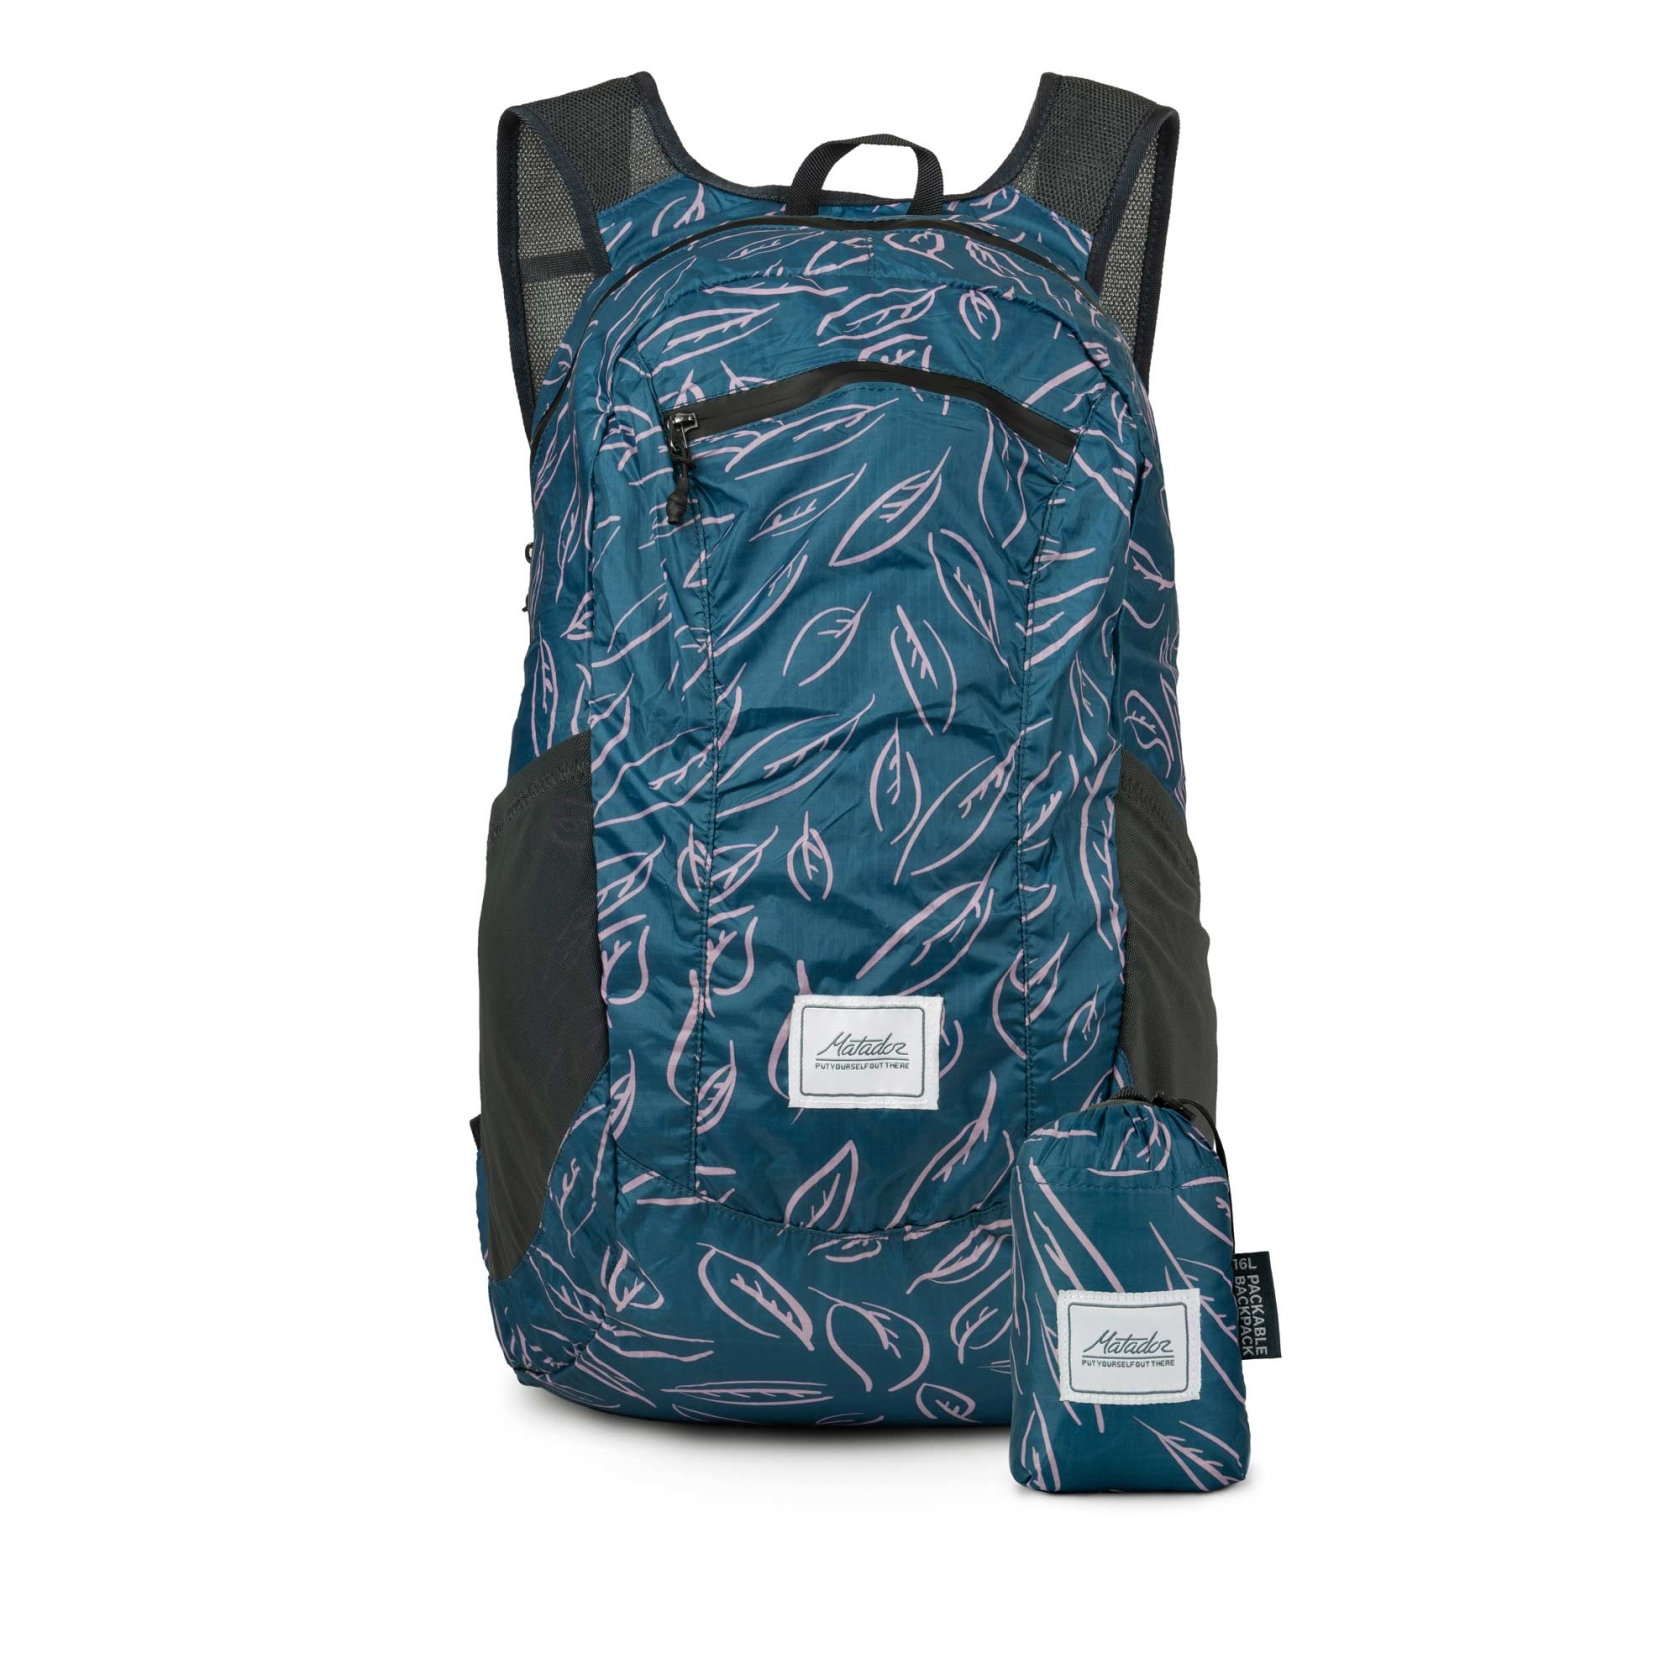 MATADOR Bag DAYLITE16 Backpack, leaf